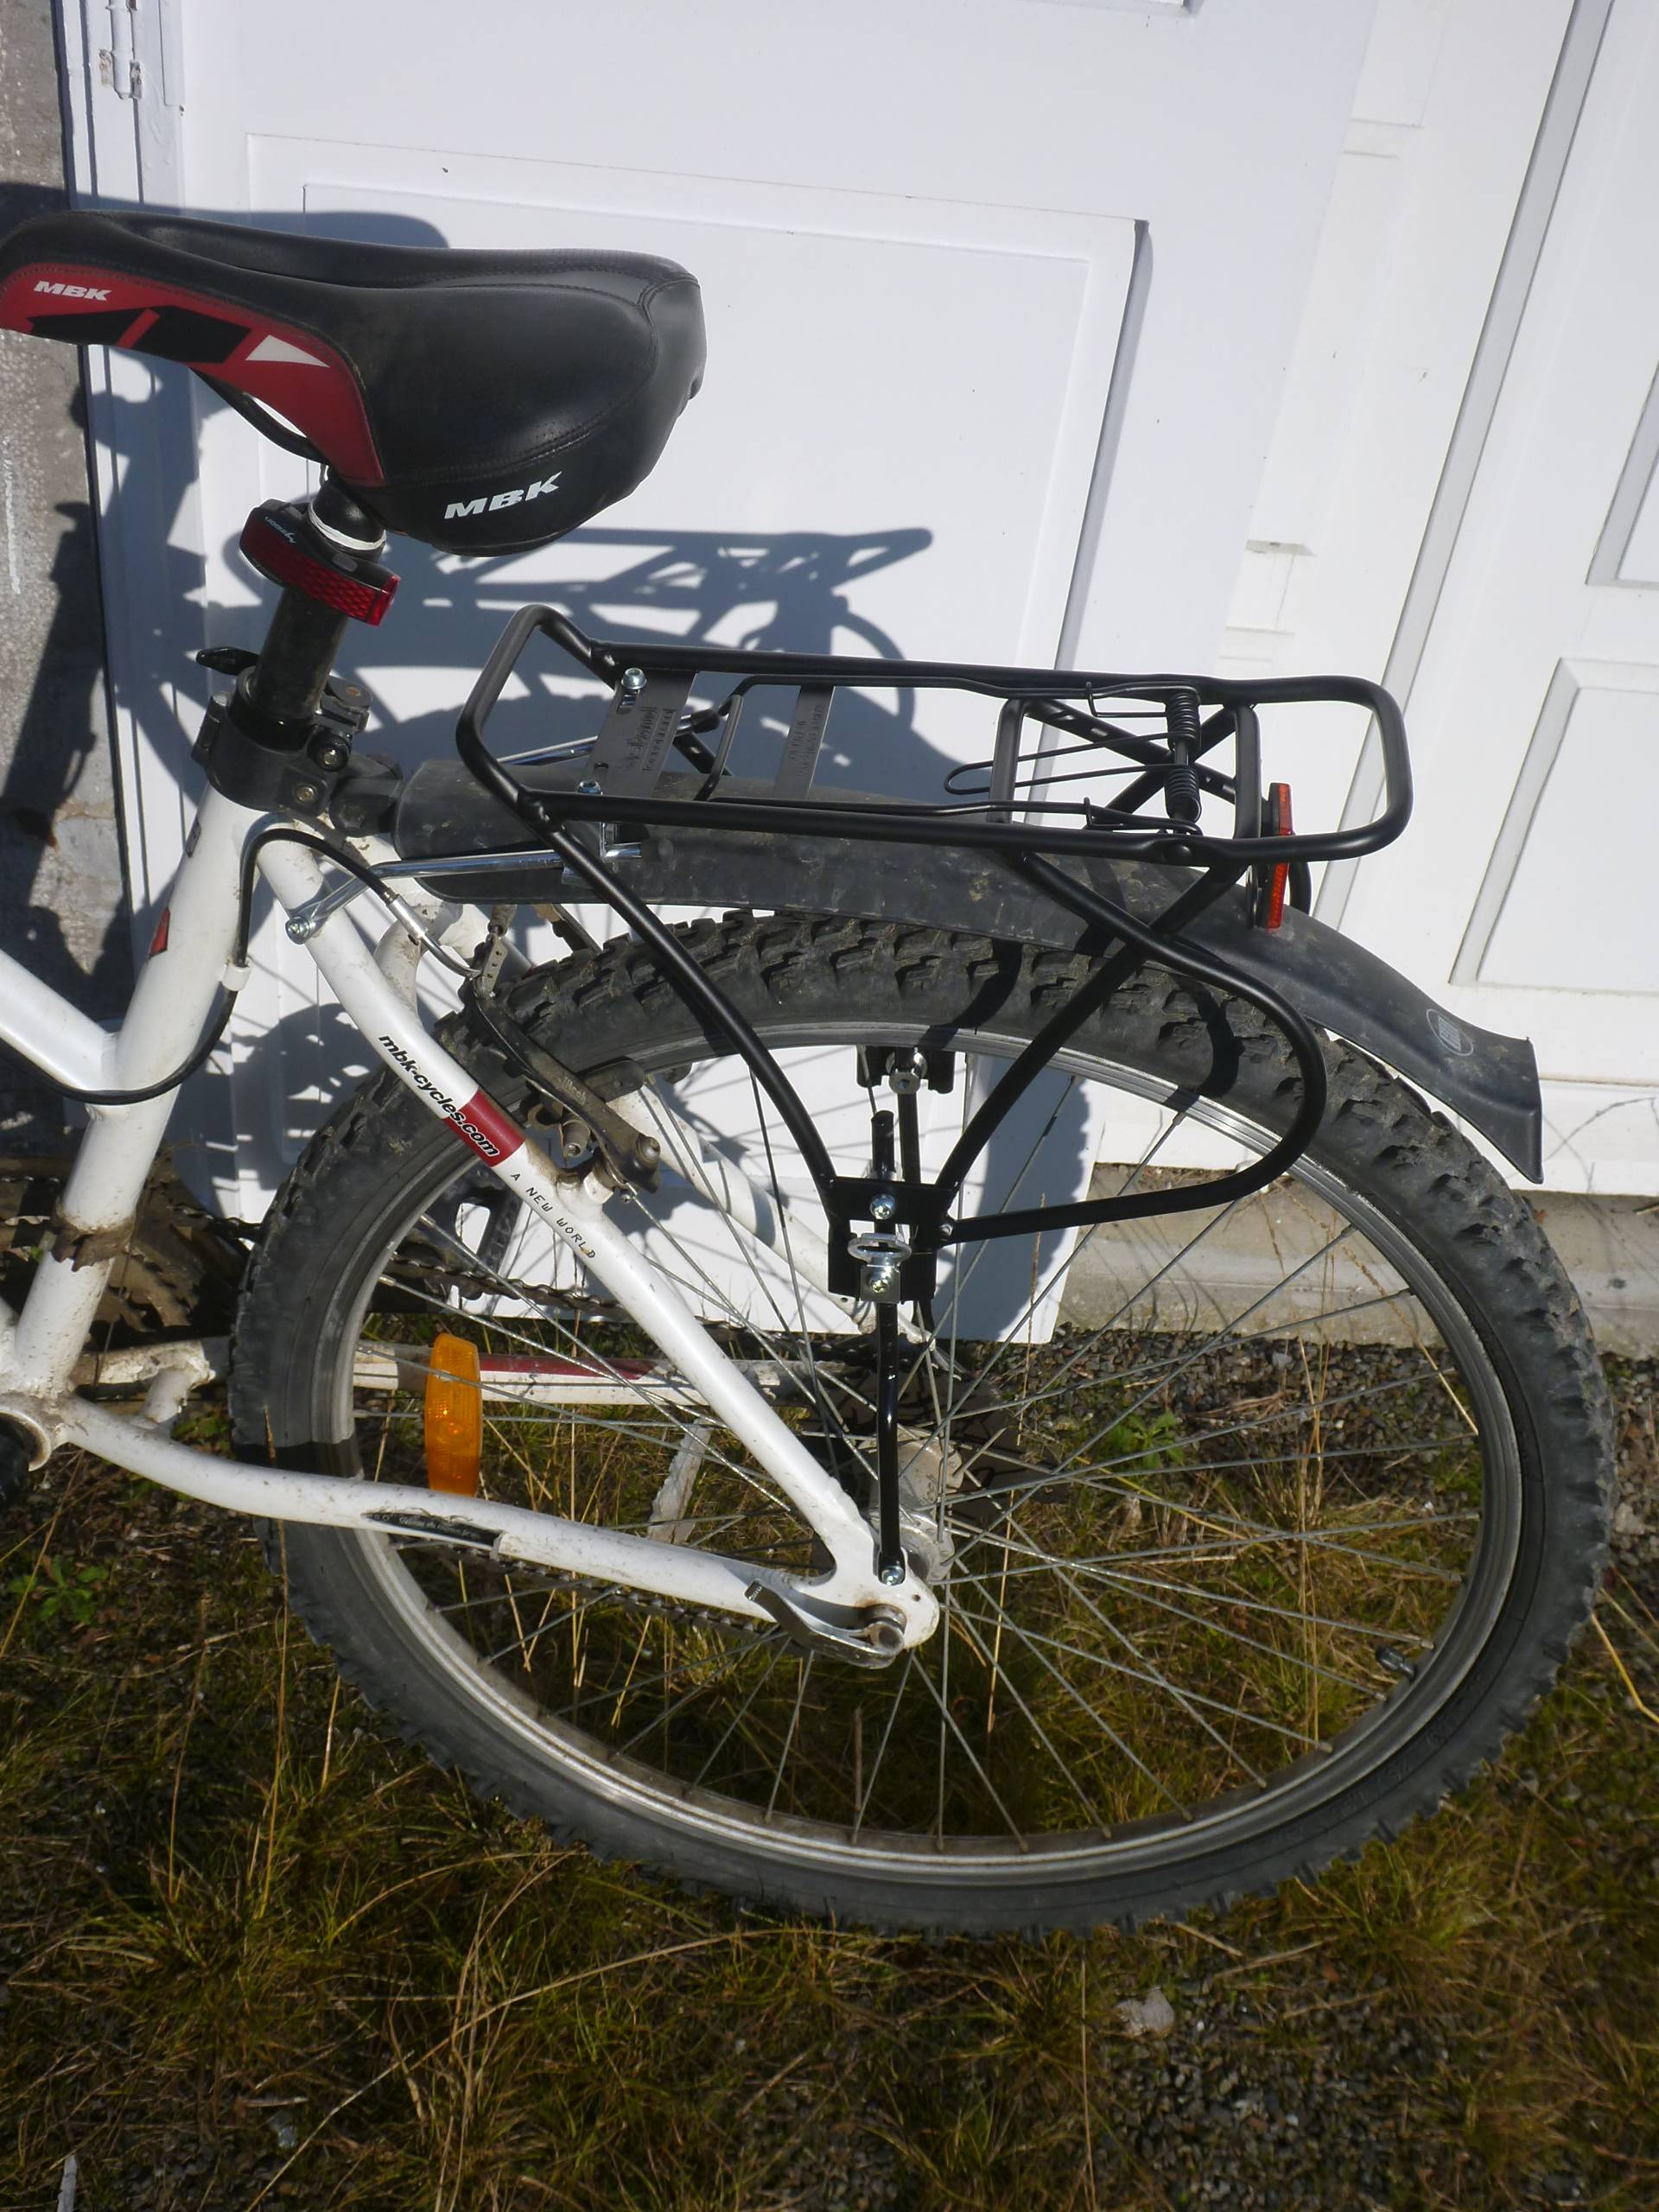 Support vélo roue avant ou arrière avec ressort pour vélo route et VTT